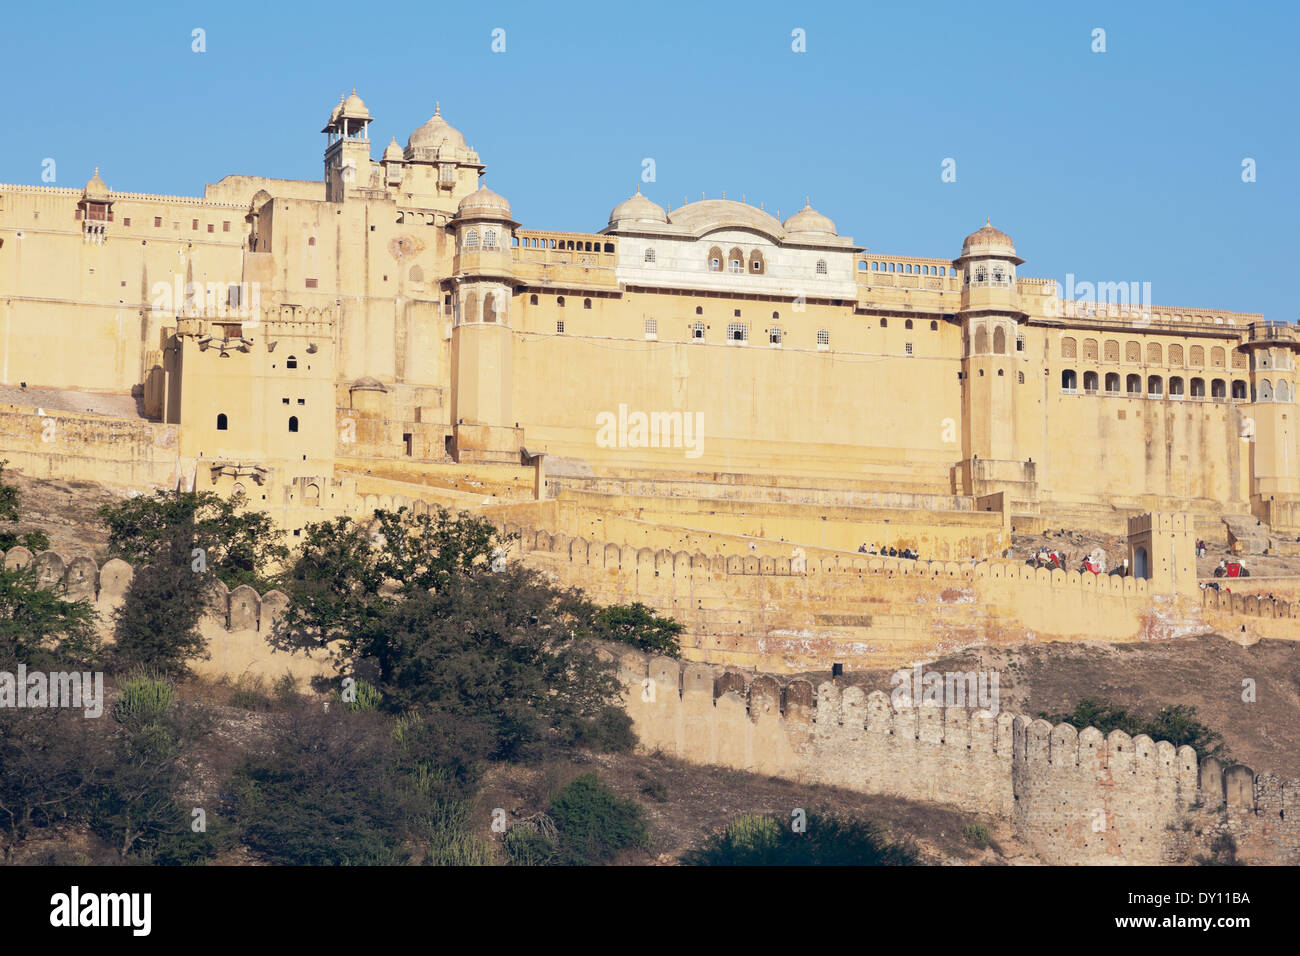 Ámbar, Rajasthan, India. Ámbar Fort-Palace Foto de stock